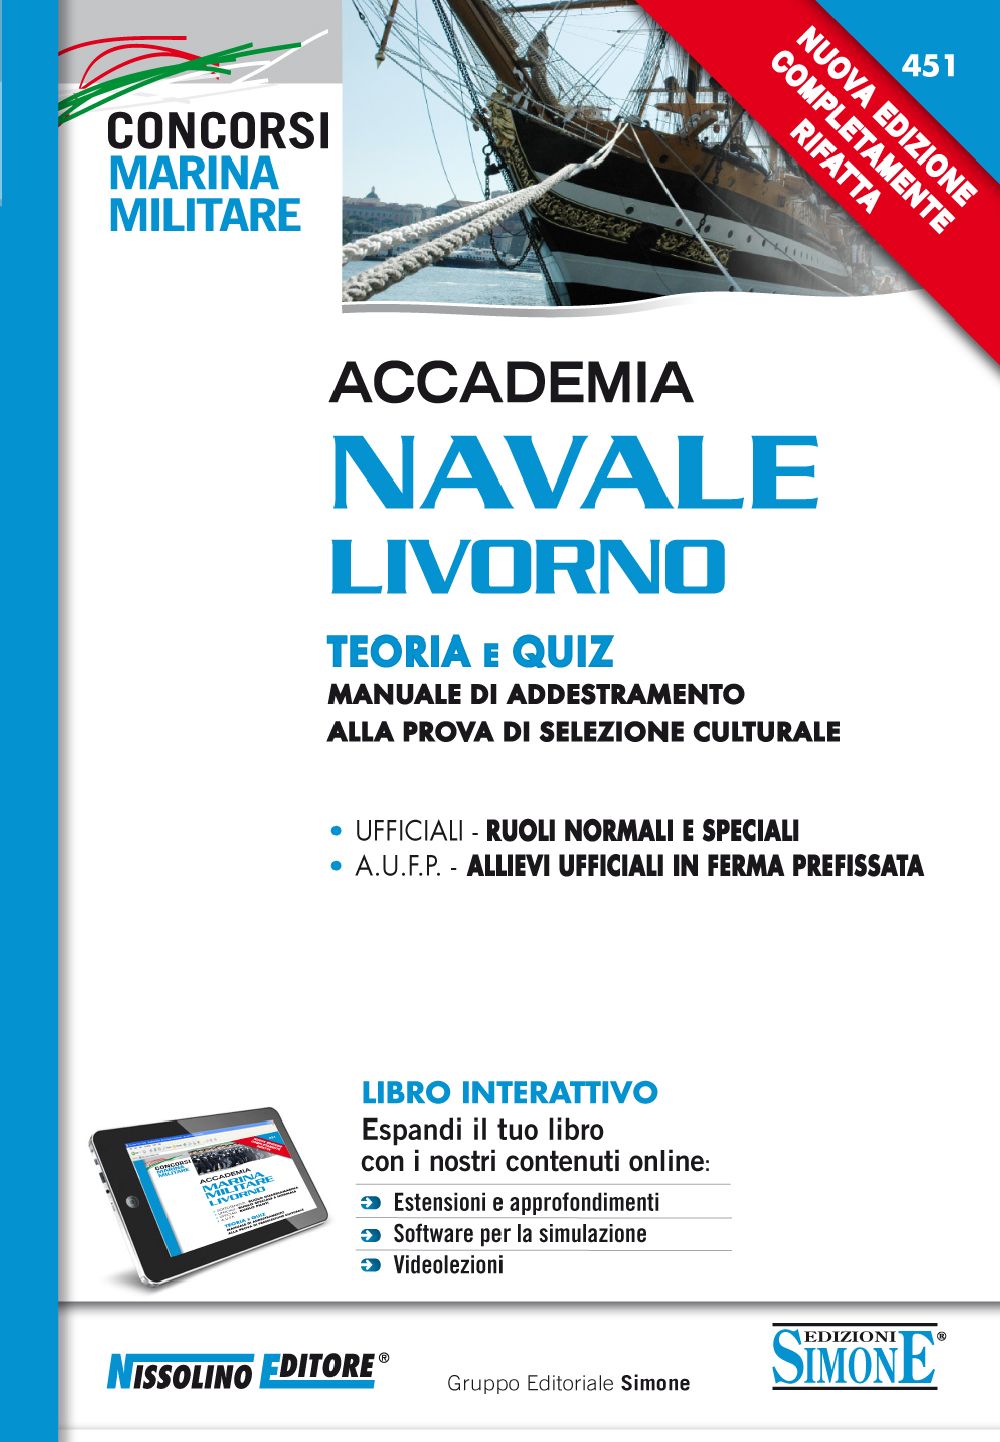 Accademia Navale Livorno - Teoria e Quiz - NE/451